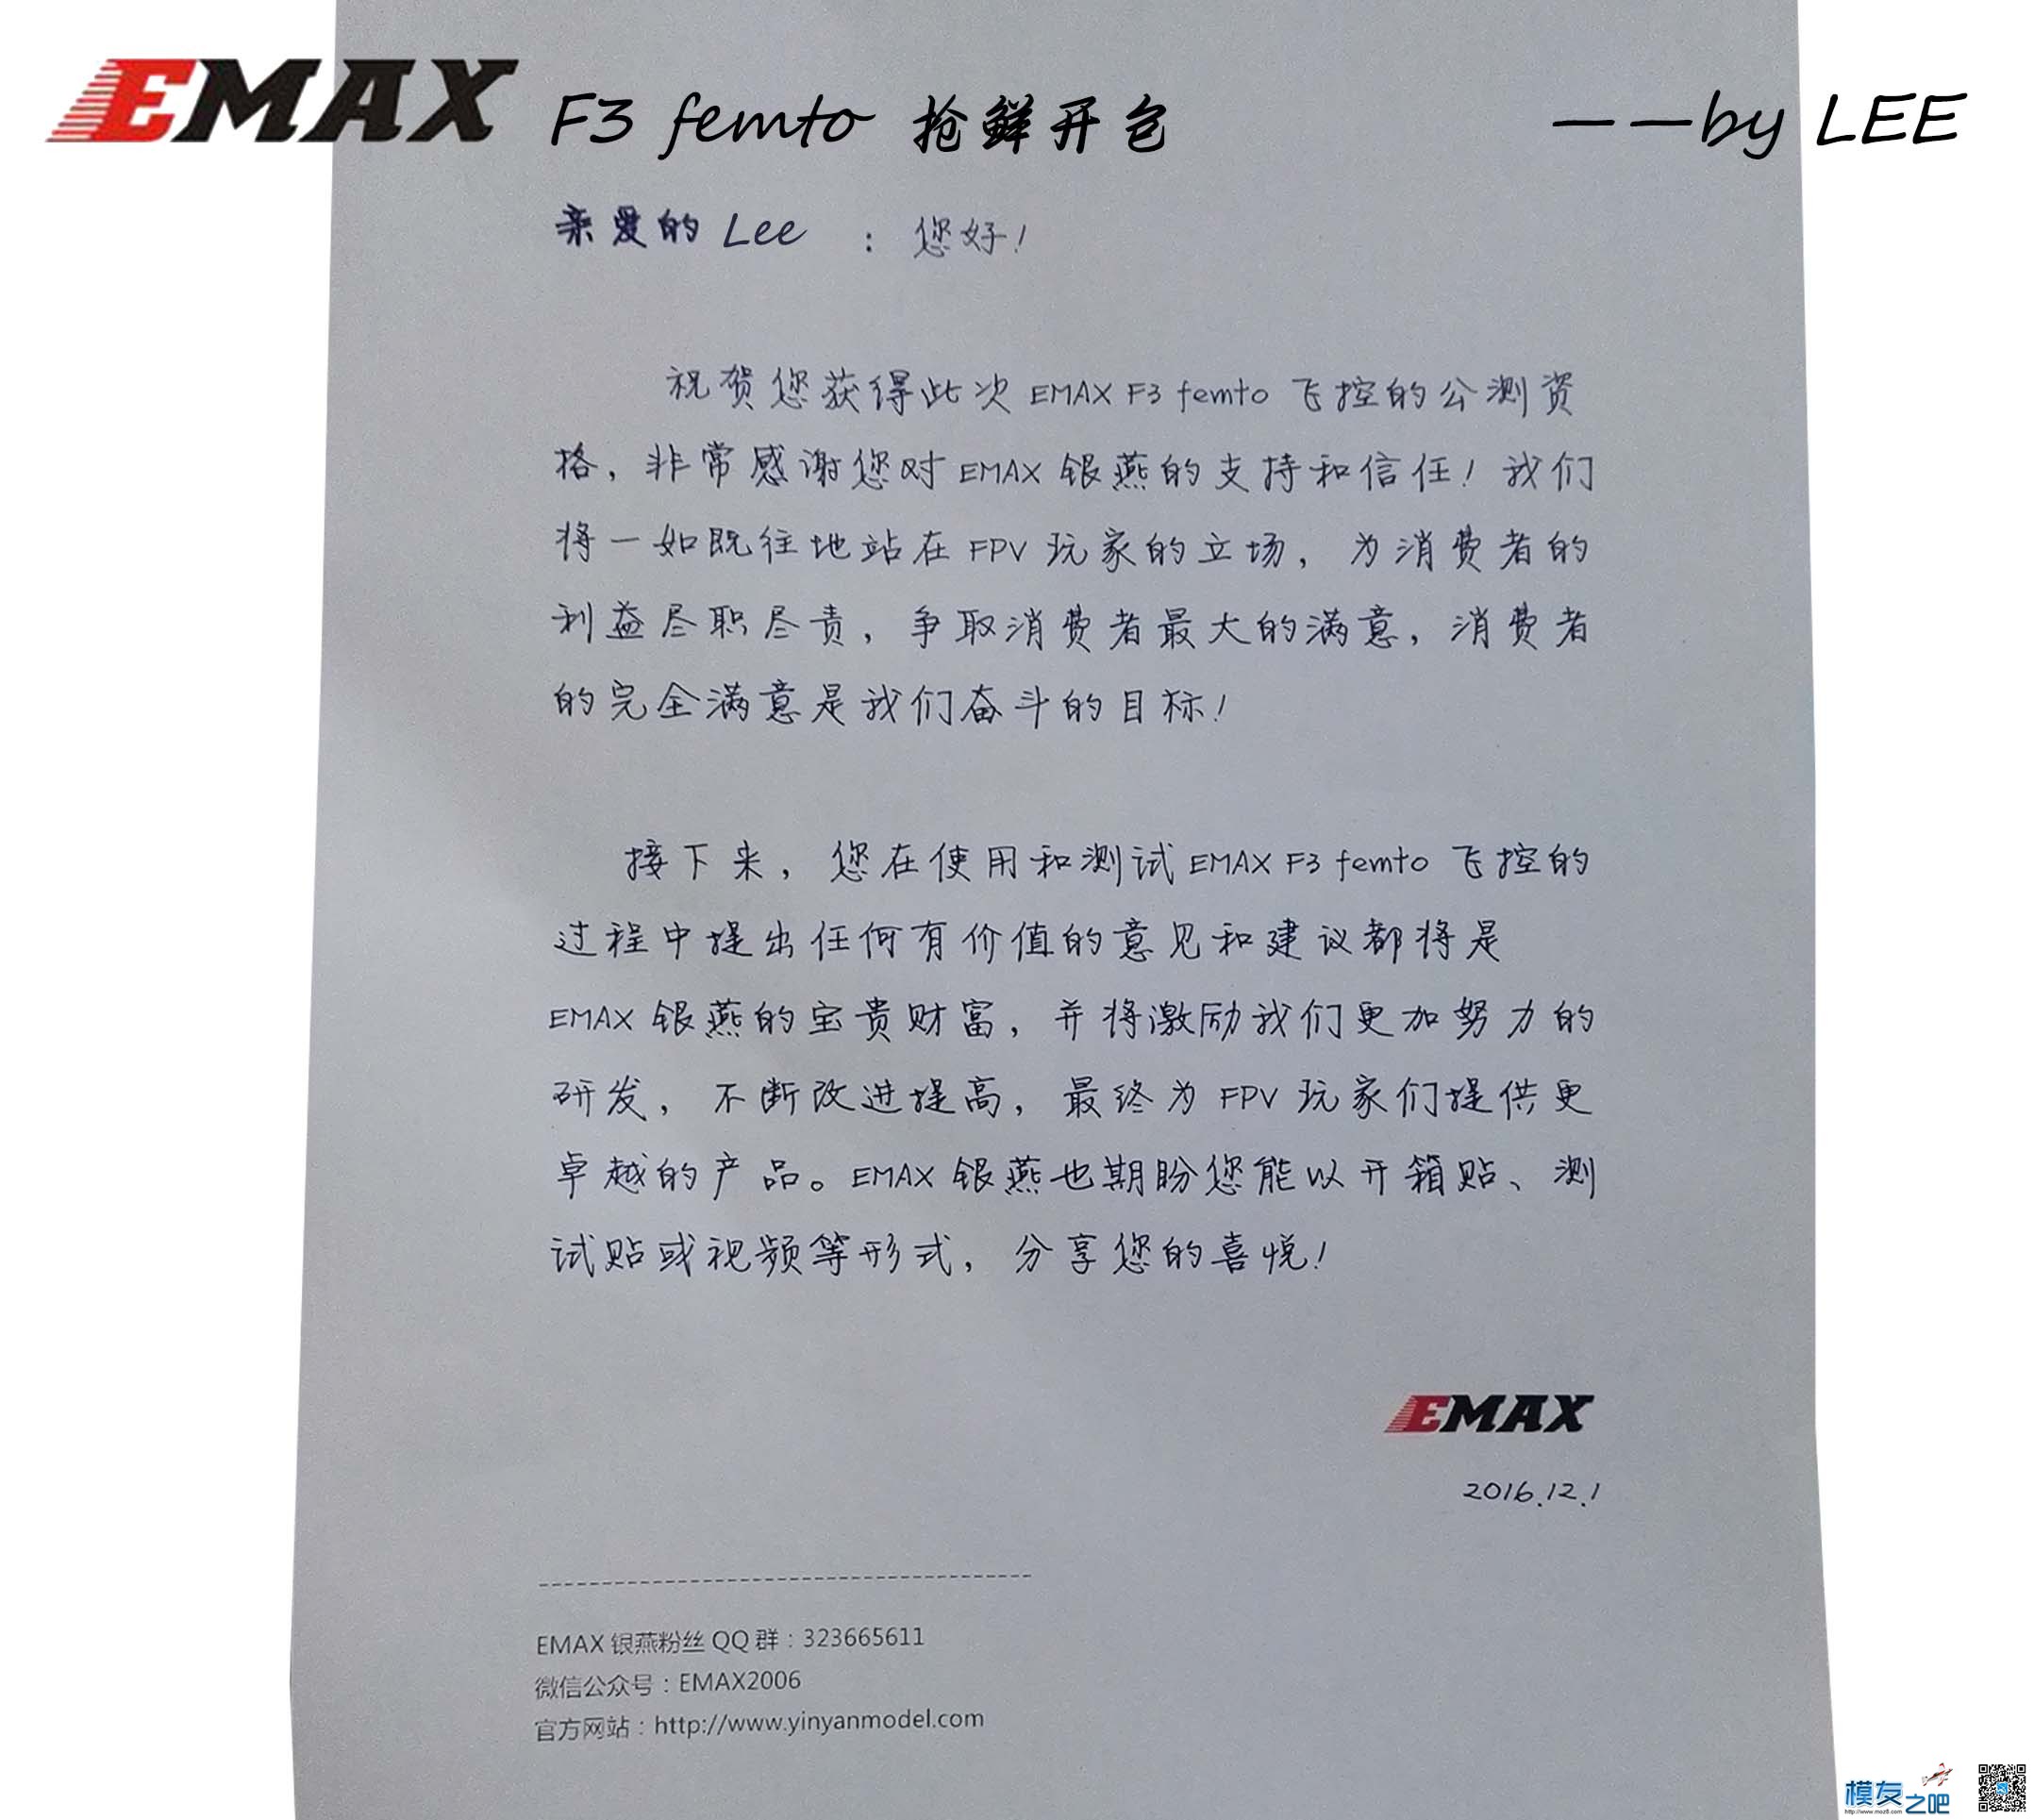 [LEE]EMAX 银燕 F3 femto飞控免费公测开包 飞控,银燕,免费,emax,有限公司 作者:lee 9166 